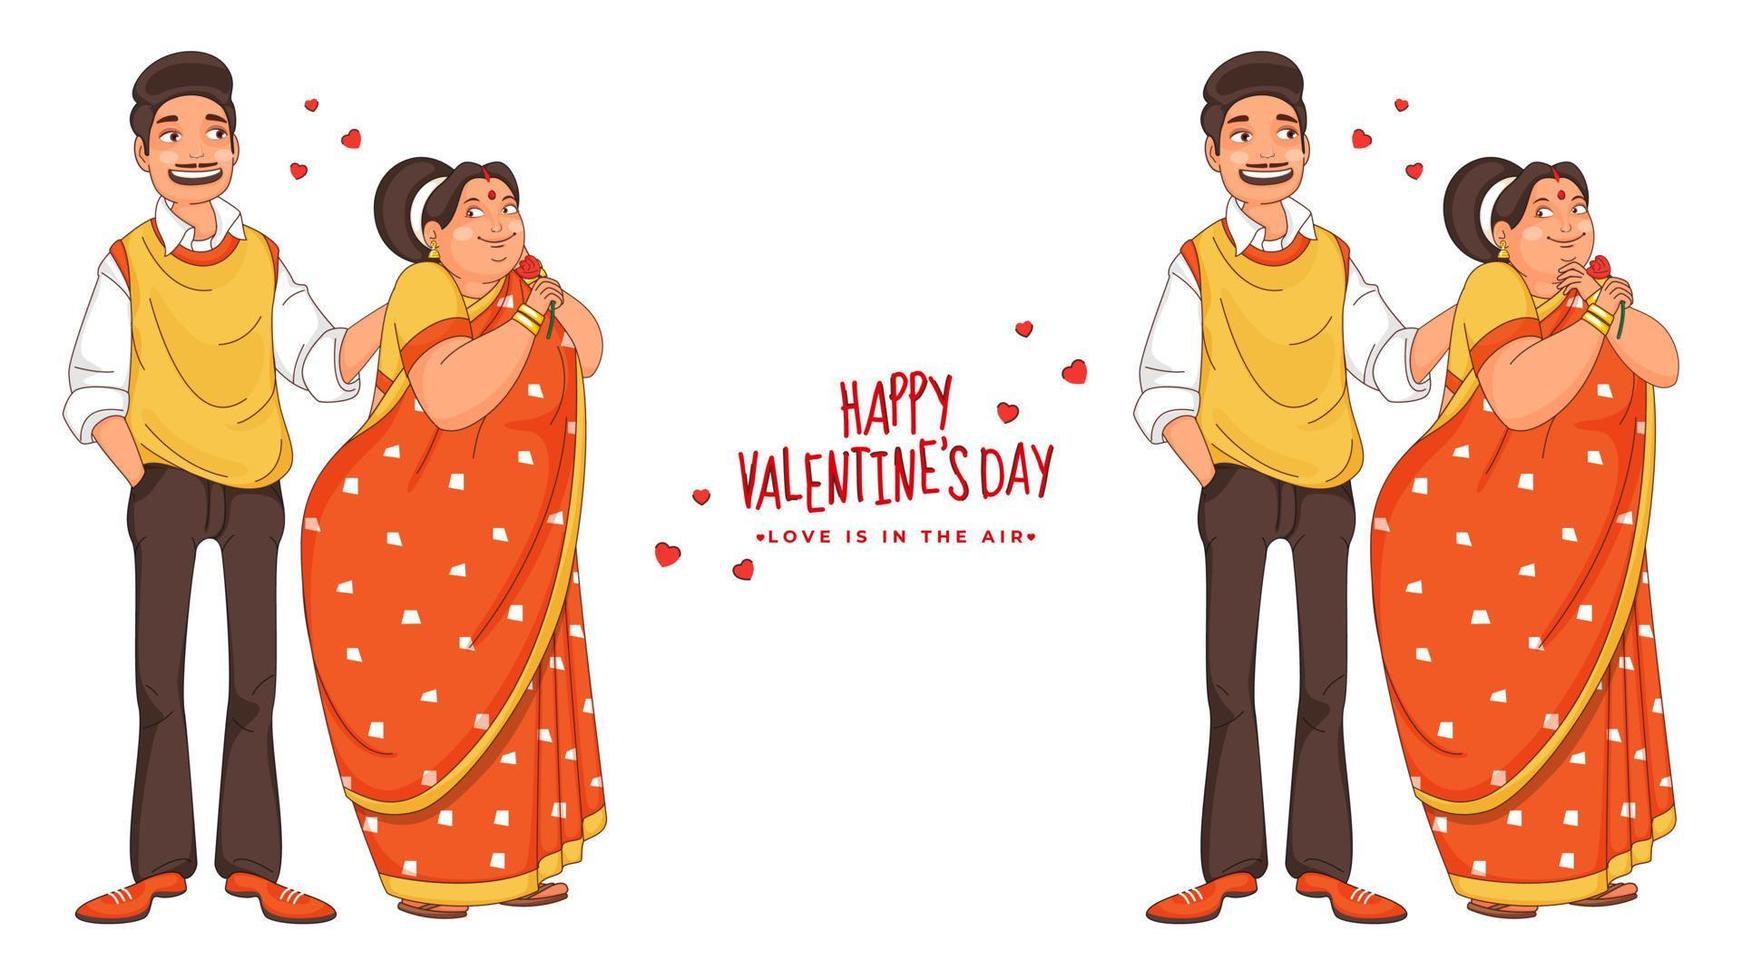 zwei Typen Bild von Karikatur liebend Paar Charakter im Stehen Pose zum glücklich Valentinstag Tag, Liebe ist im das Luft Konzept. vektor